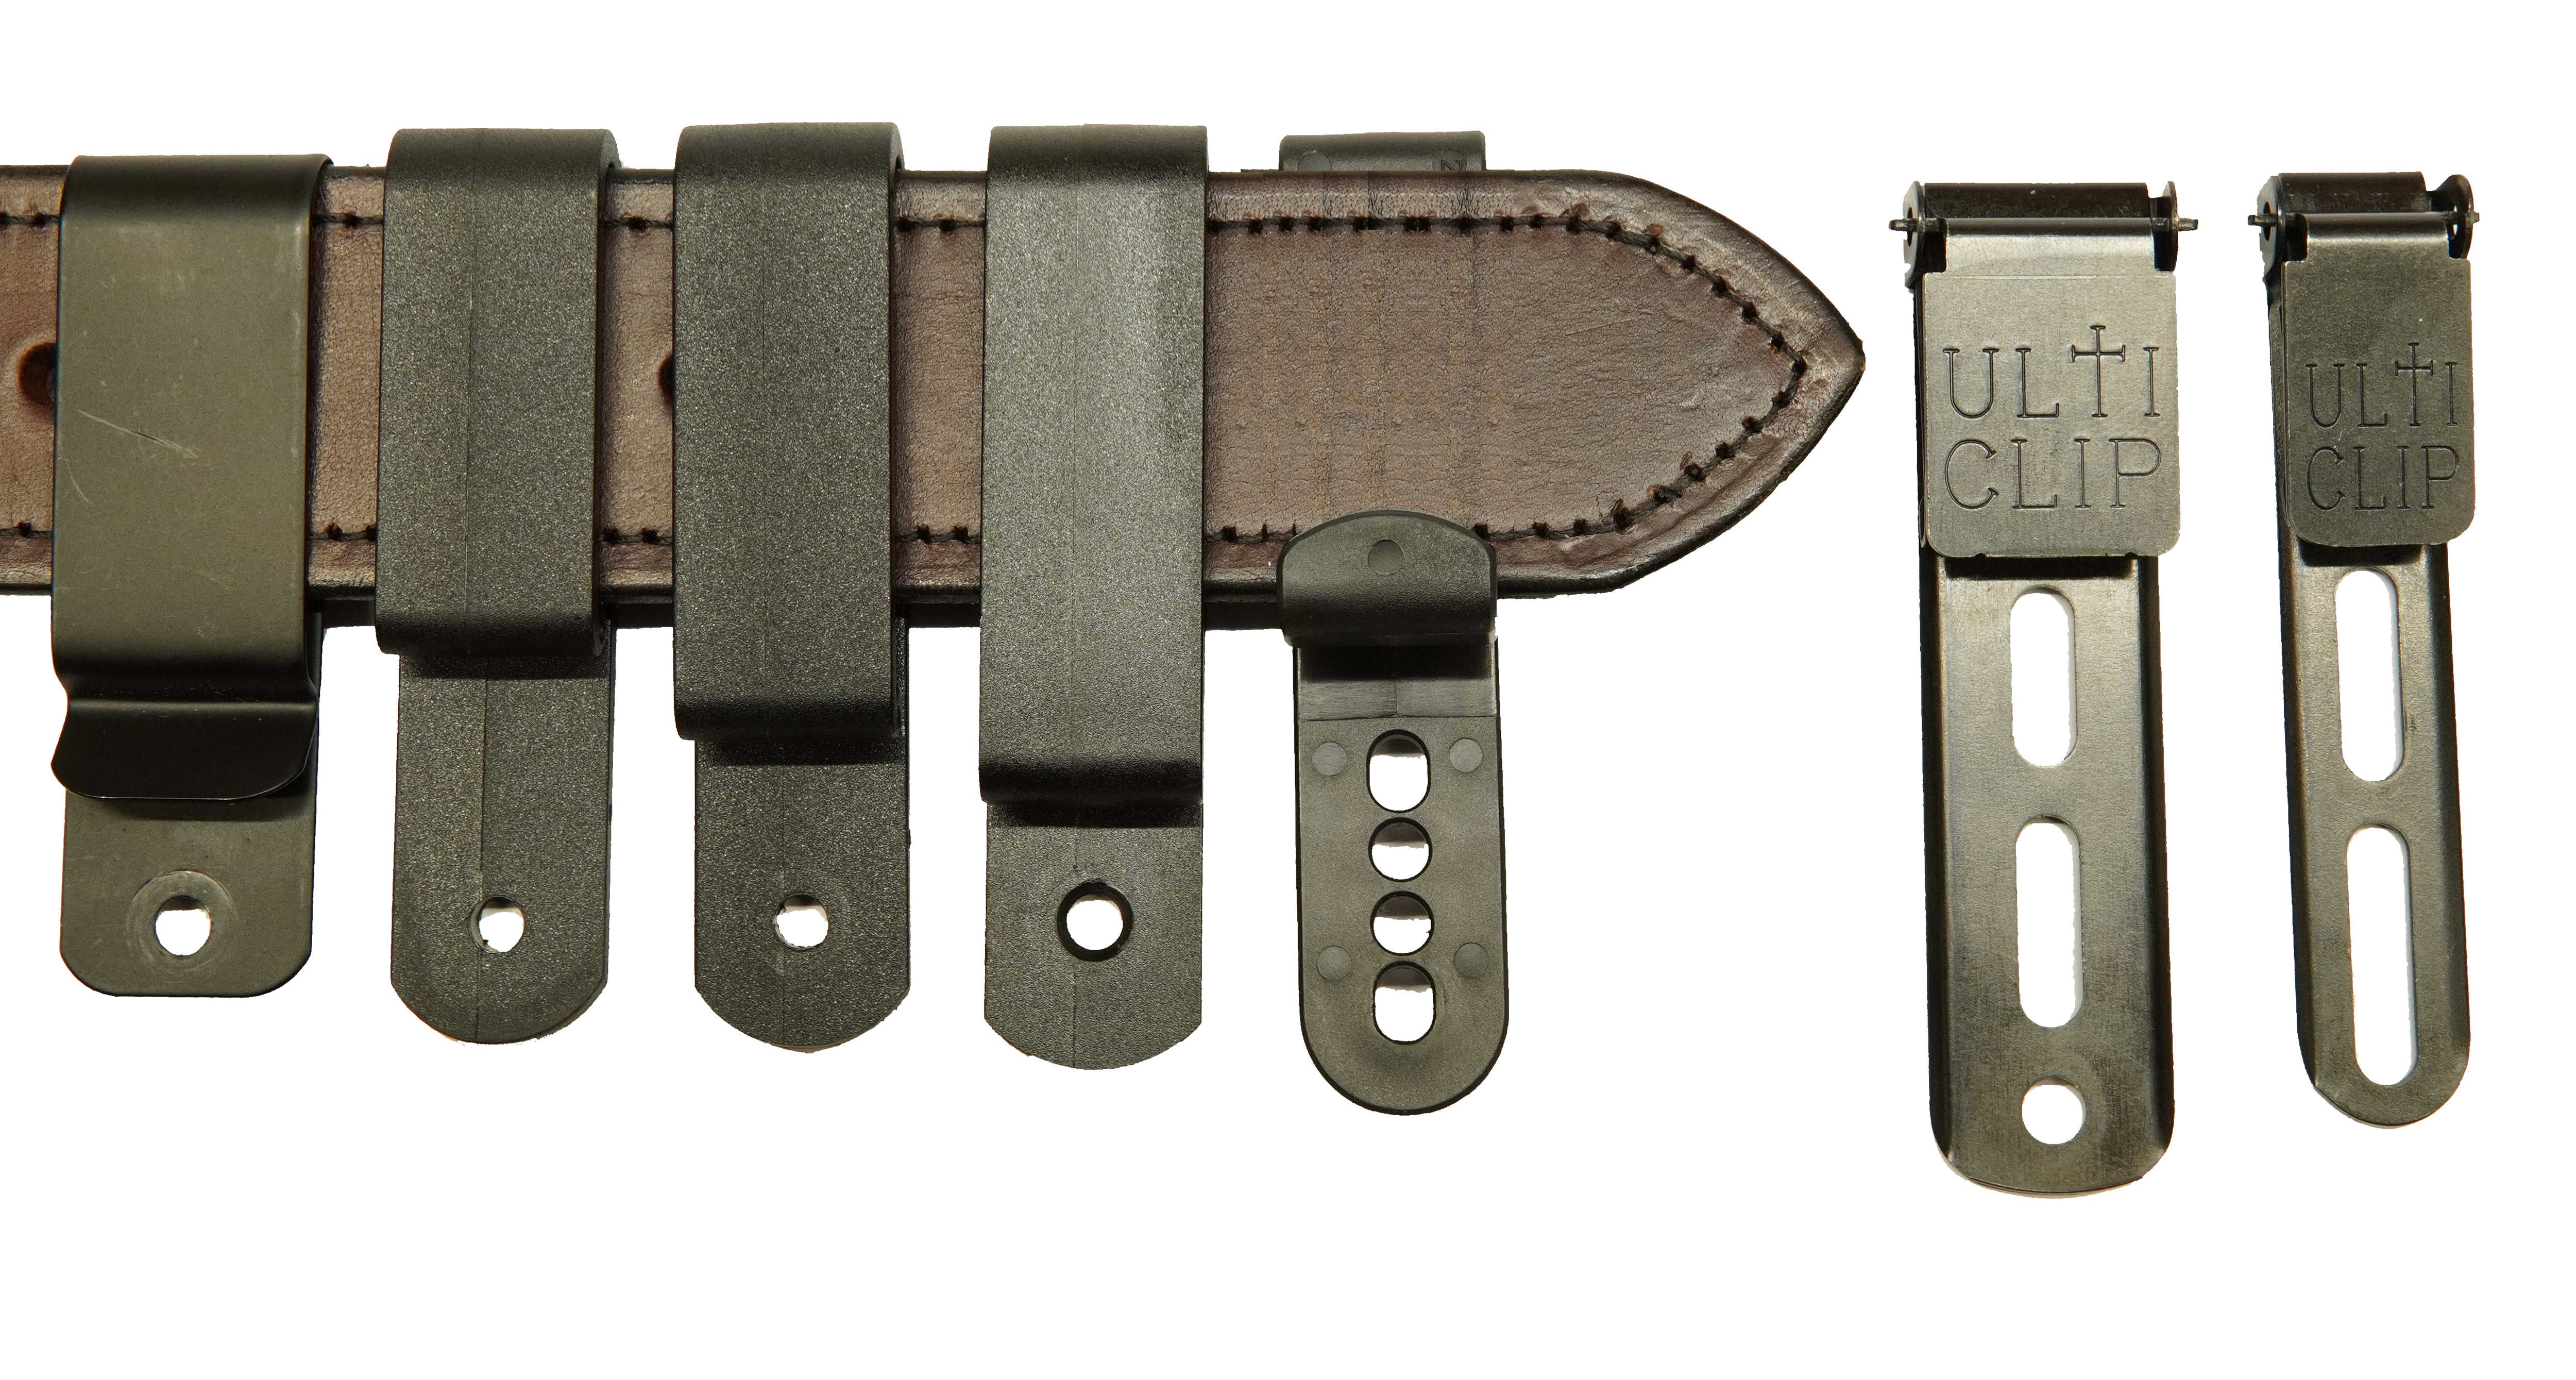 1-3/4 Spring Steel Belt Clips - Sold as Pair - Hidden Hybrid Holsters